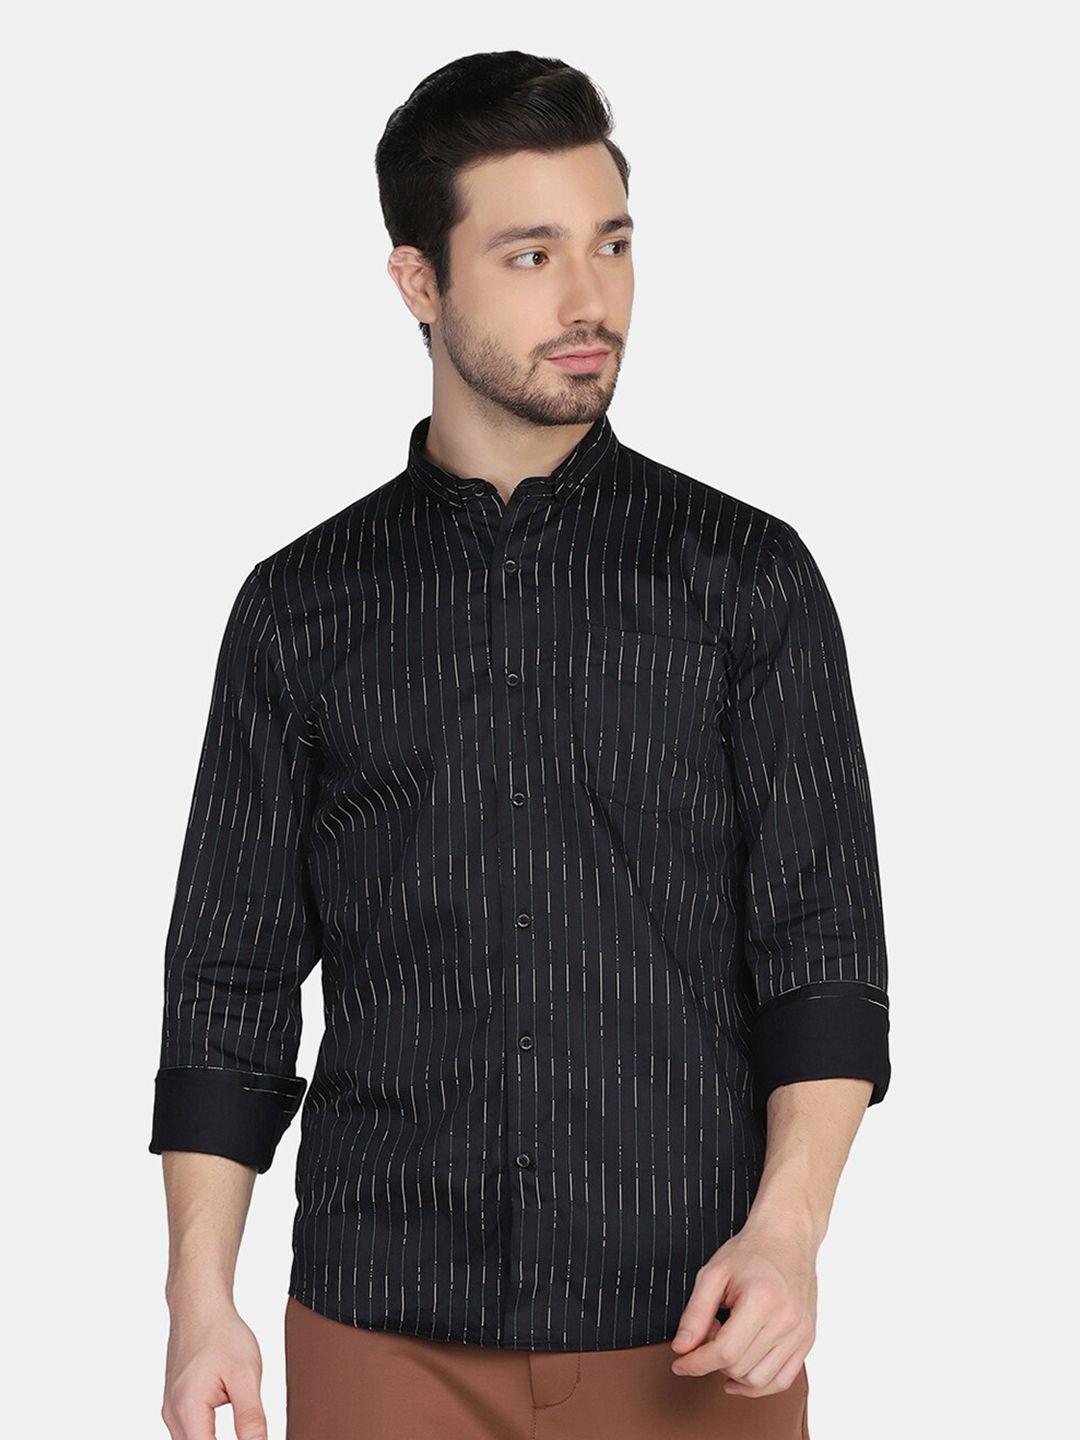 blackberrys men black slim fit striped pure cotton casual shirt